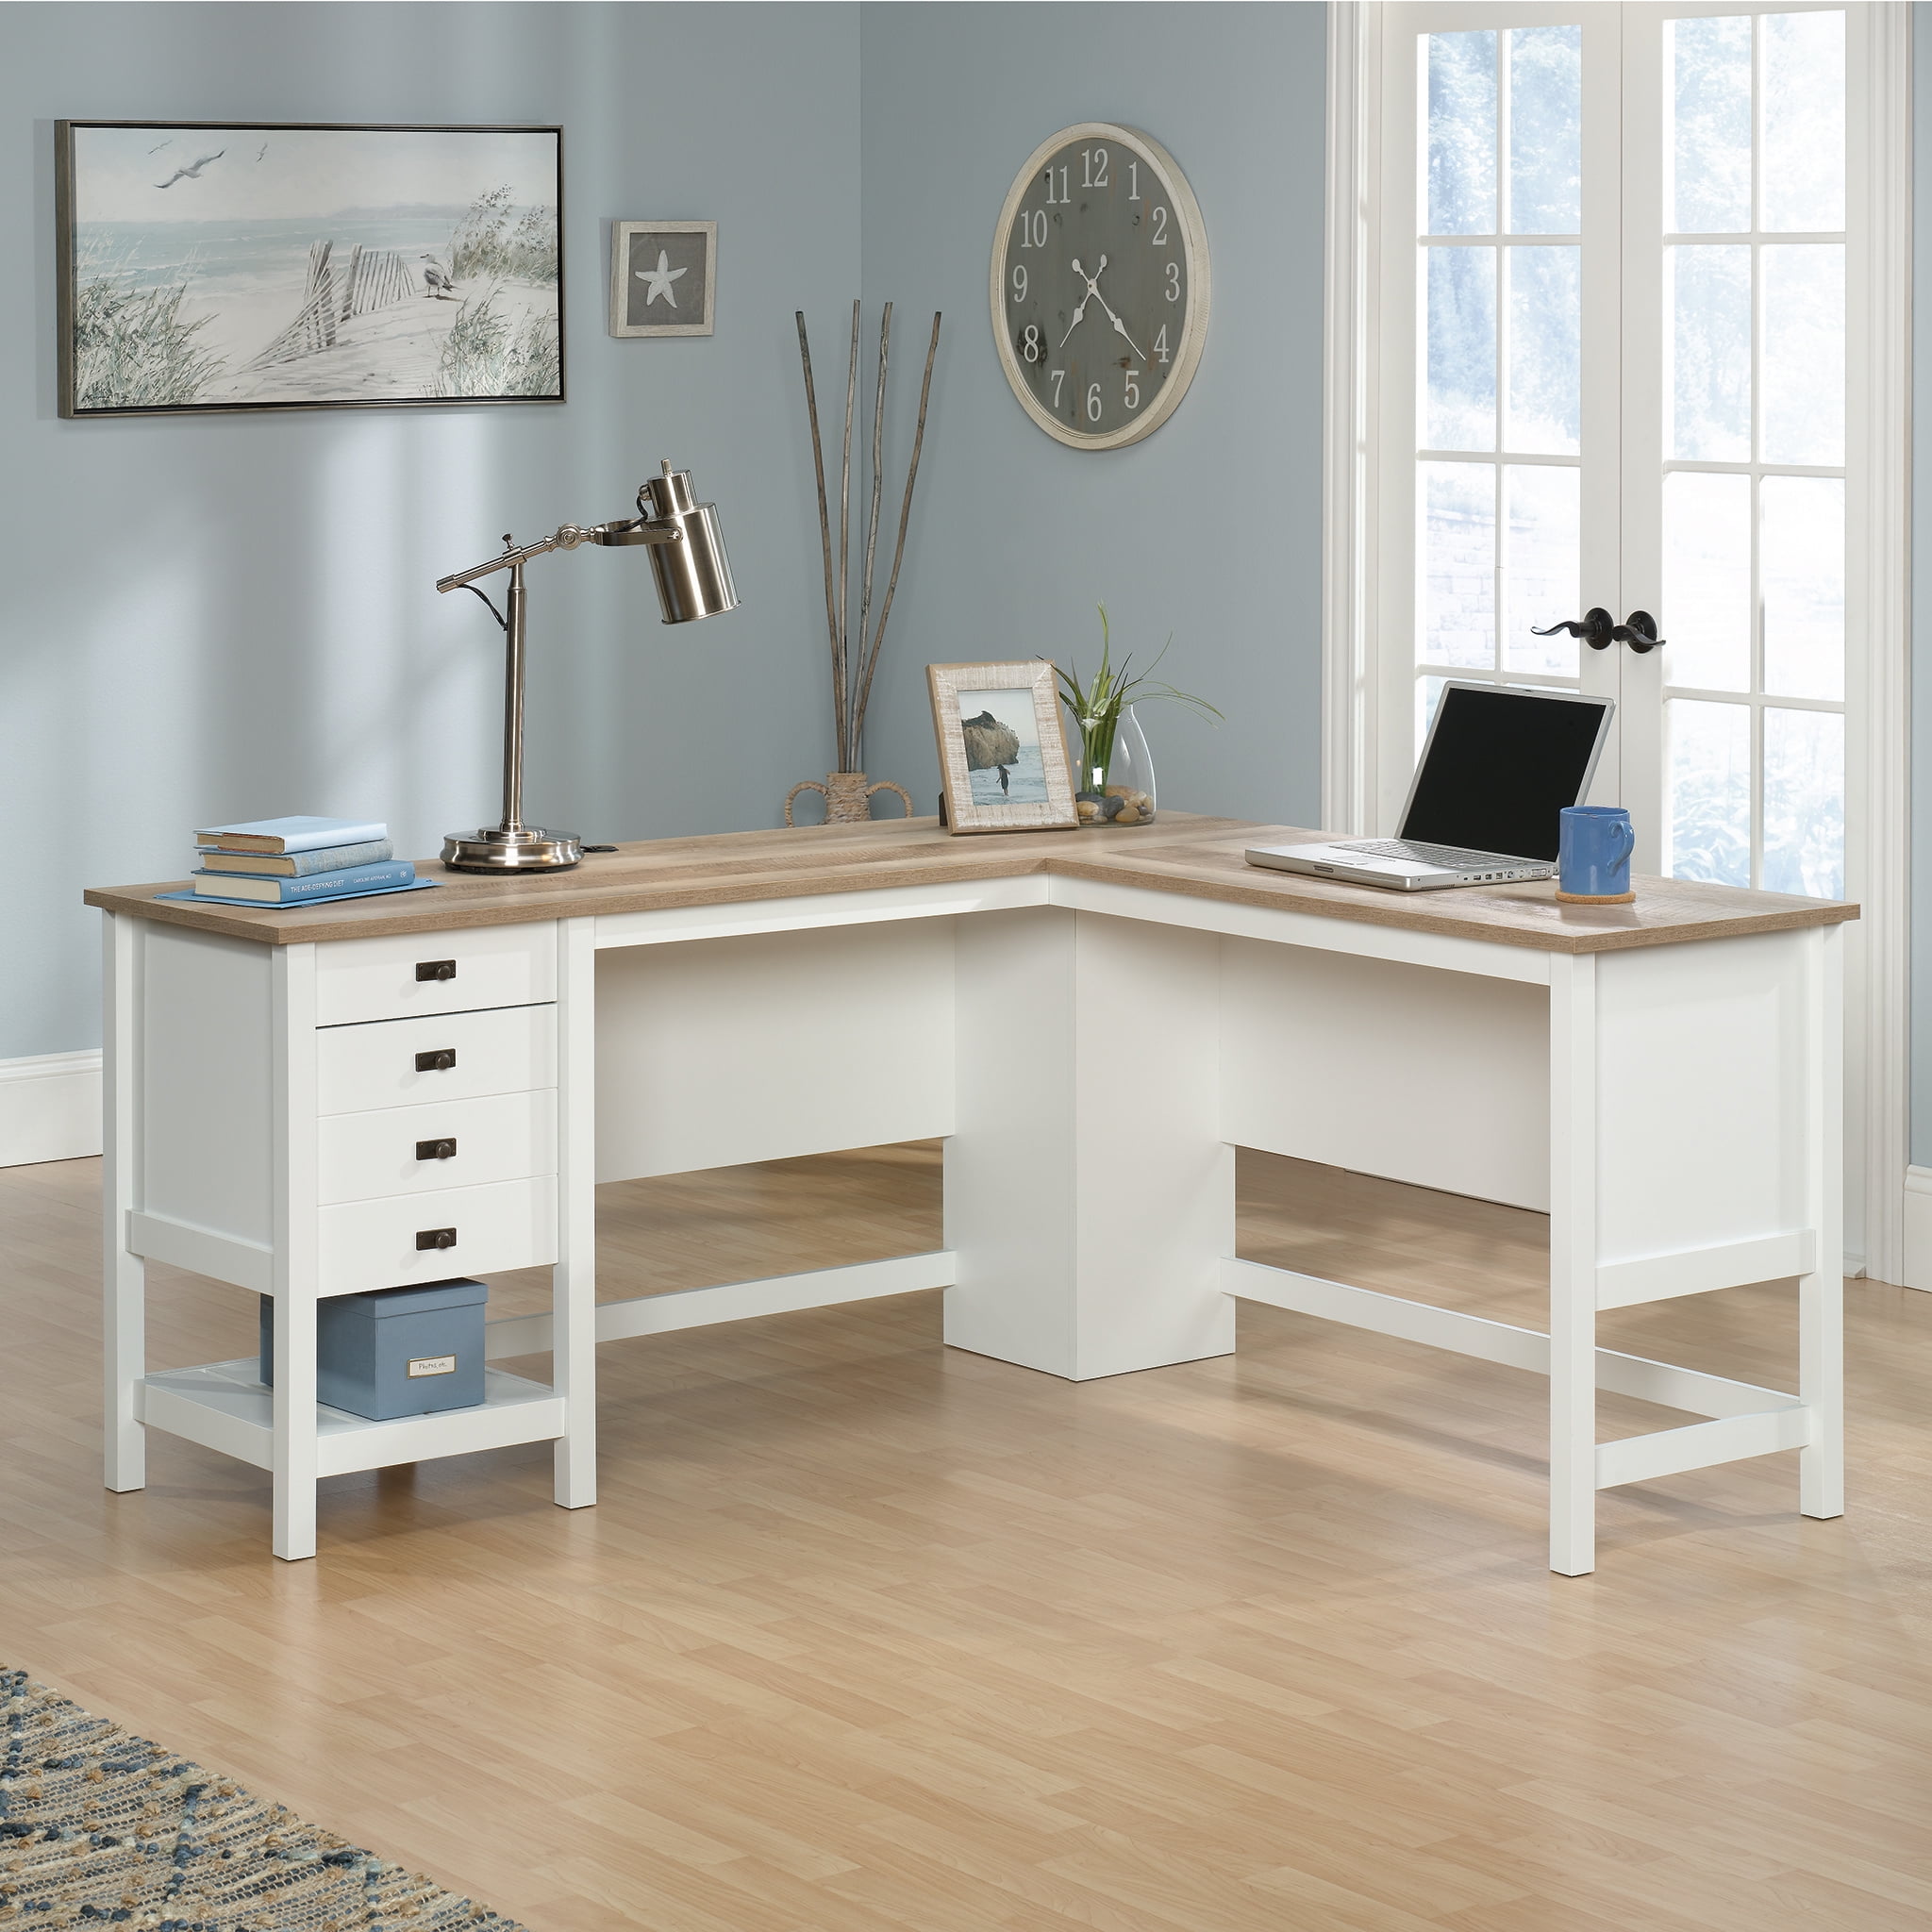 Sauder Cottage Road L Shaped Desk With, Oak L Shaped Desk With Drawers